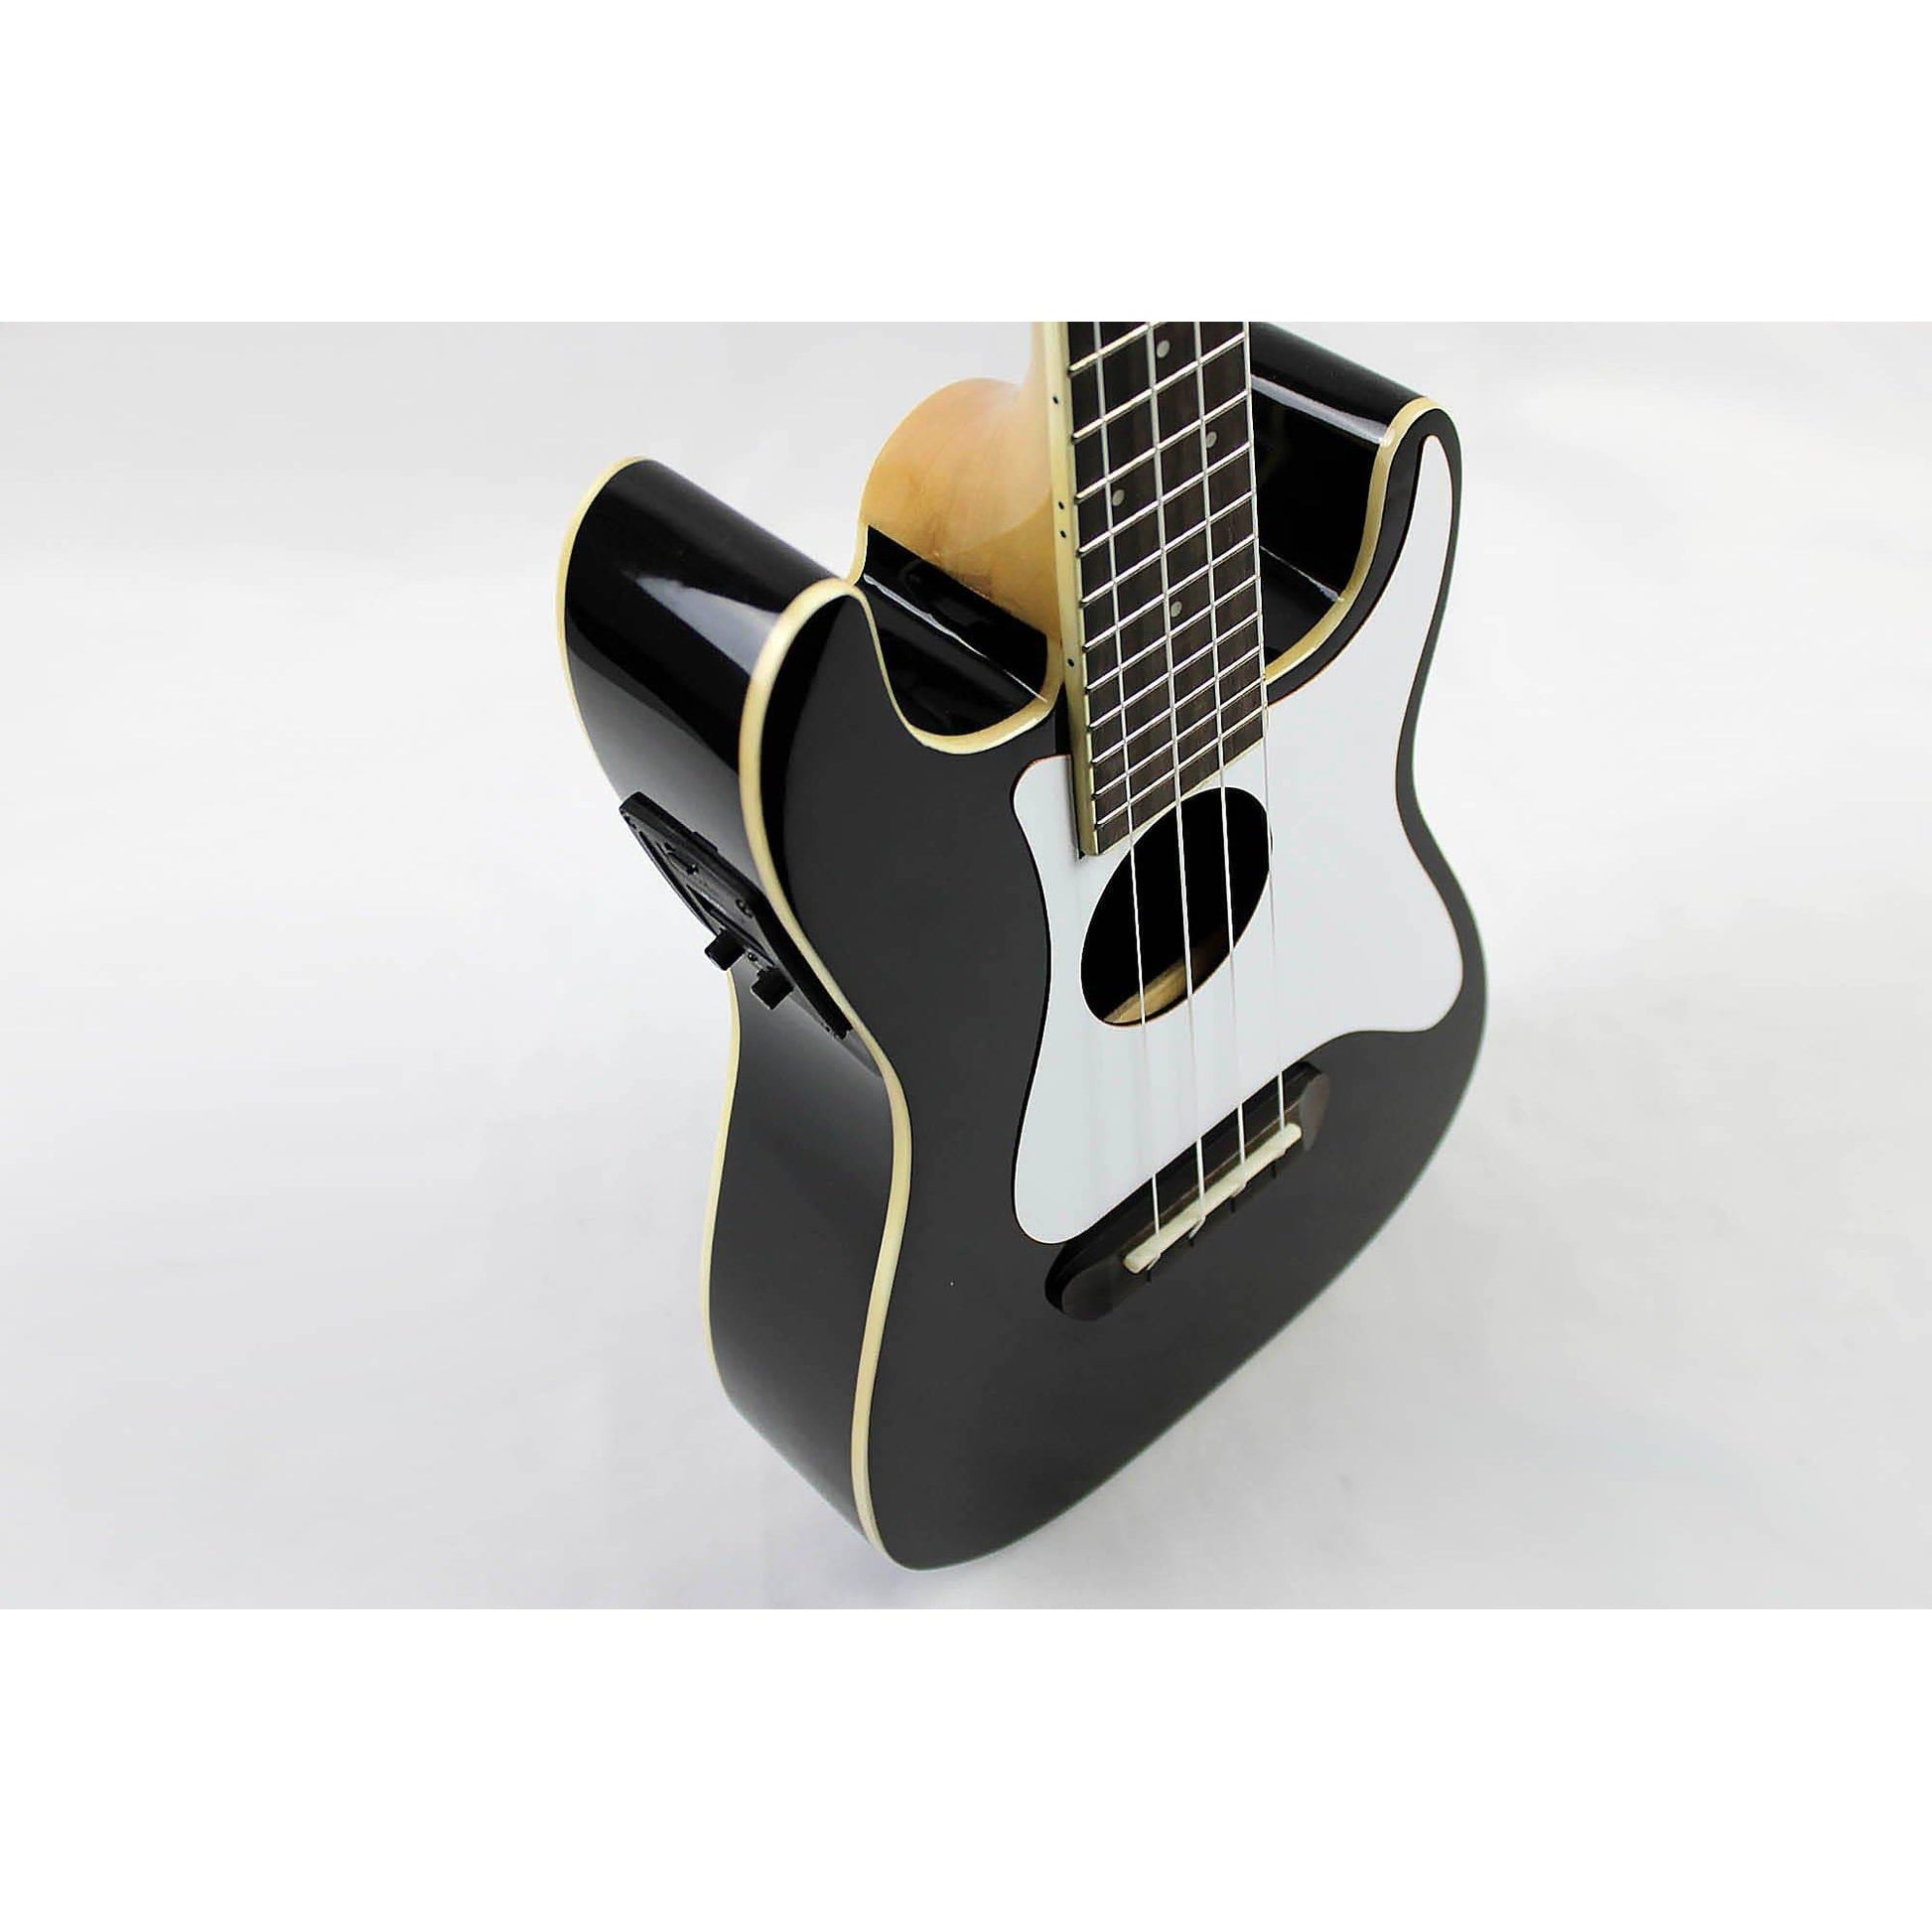 Fender Fullerton Strat Uke - Black - Leitz Music-885978381814-0971653106